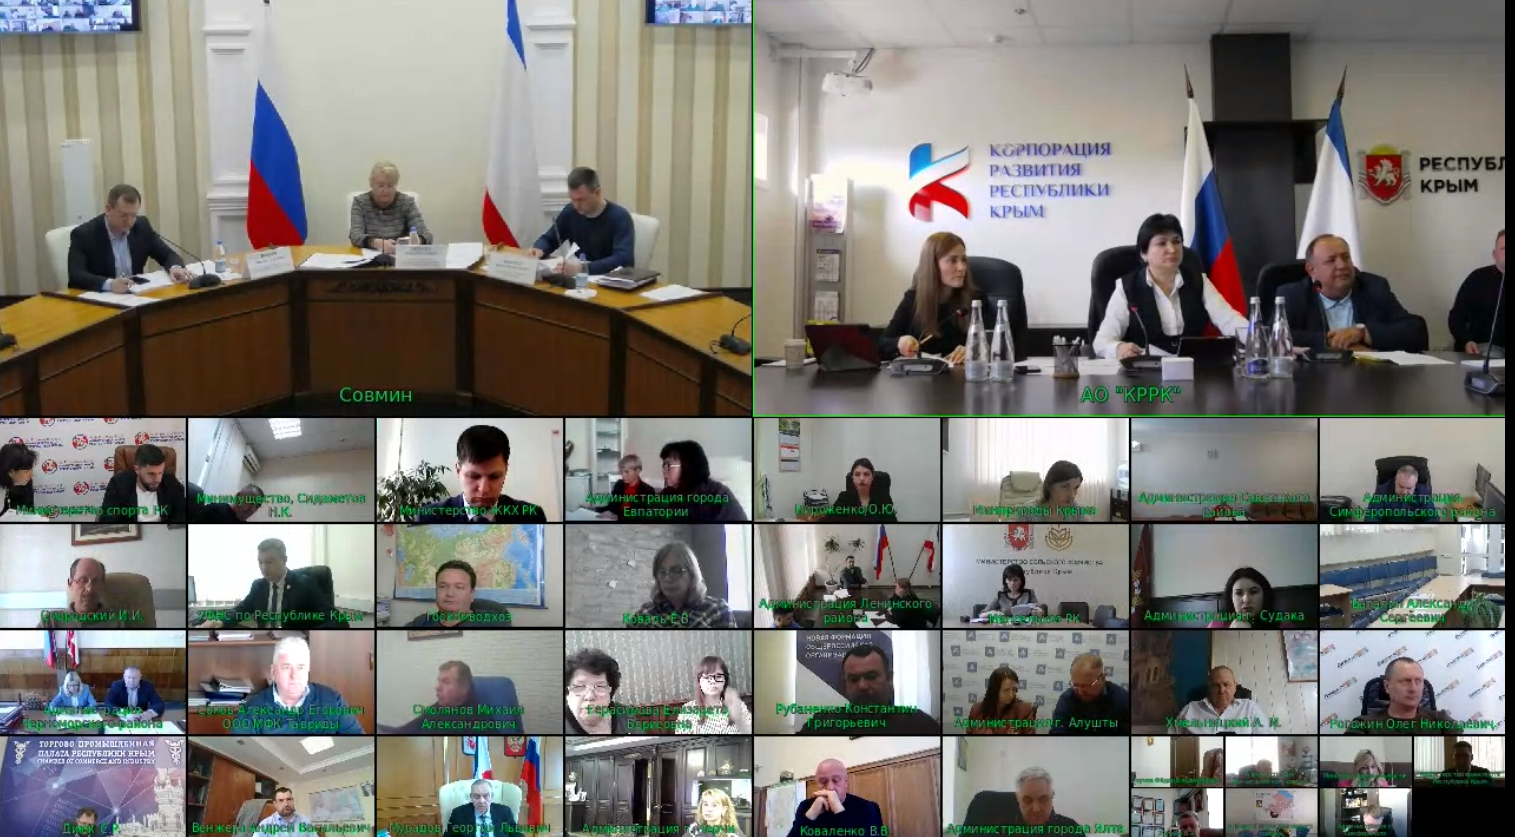 Дирекция приняла участие в заседании Совета по улучшению инвестиционного климата на территории Республики Крым